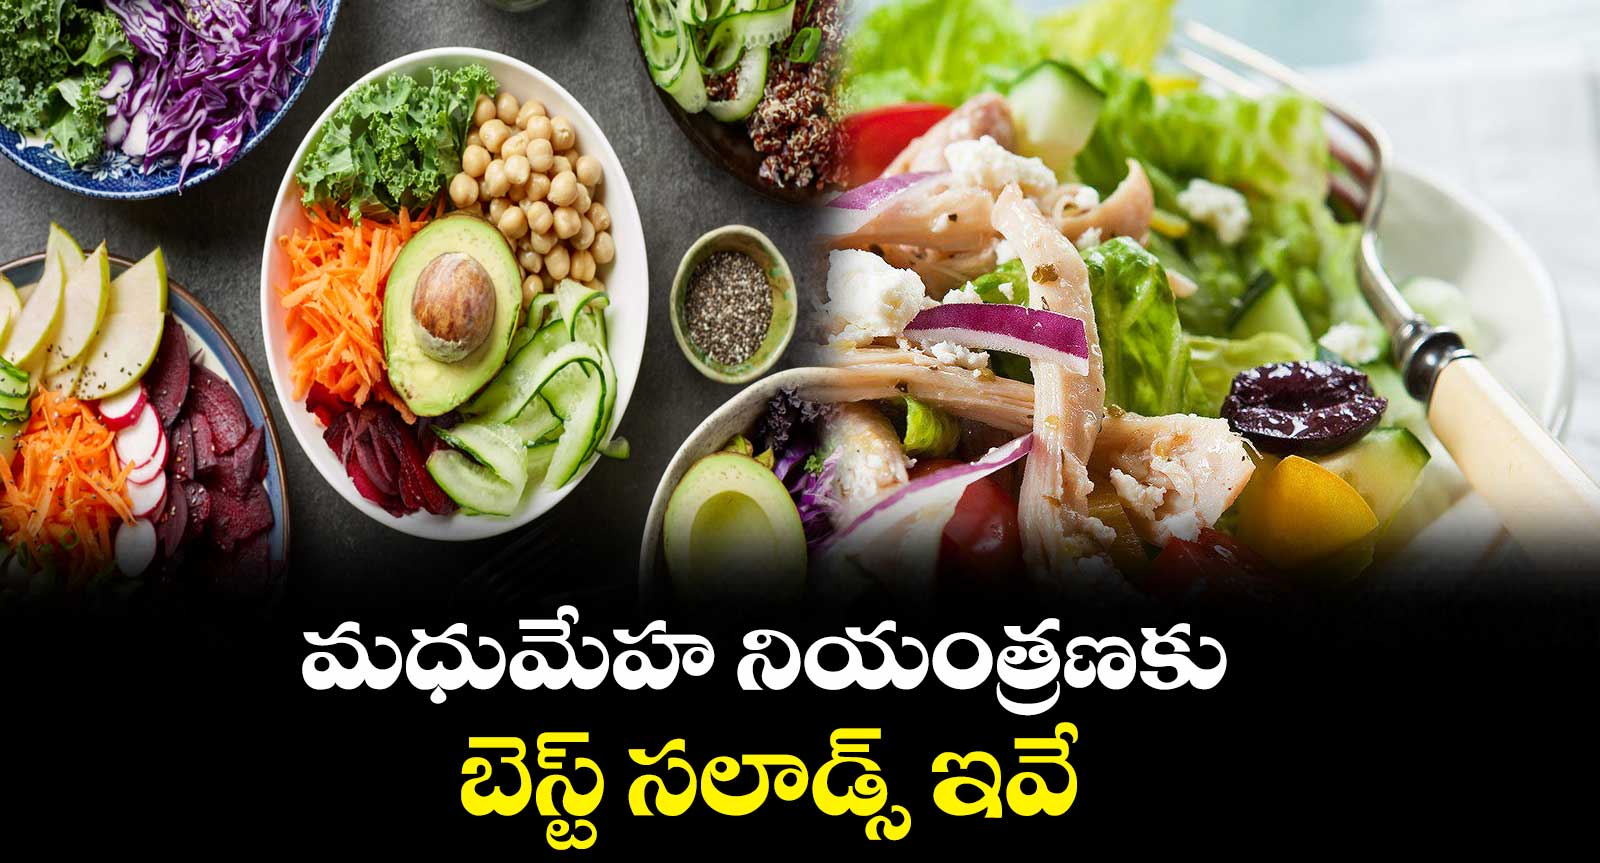 Salad selections: మధుమేహ నియంత్రణకు బెస్ట్ సలాడ్స్ ఇవే